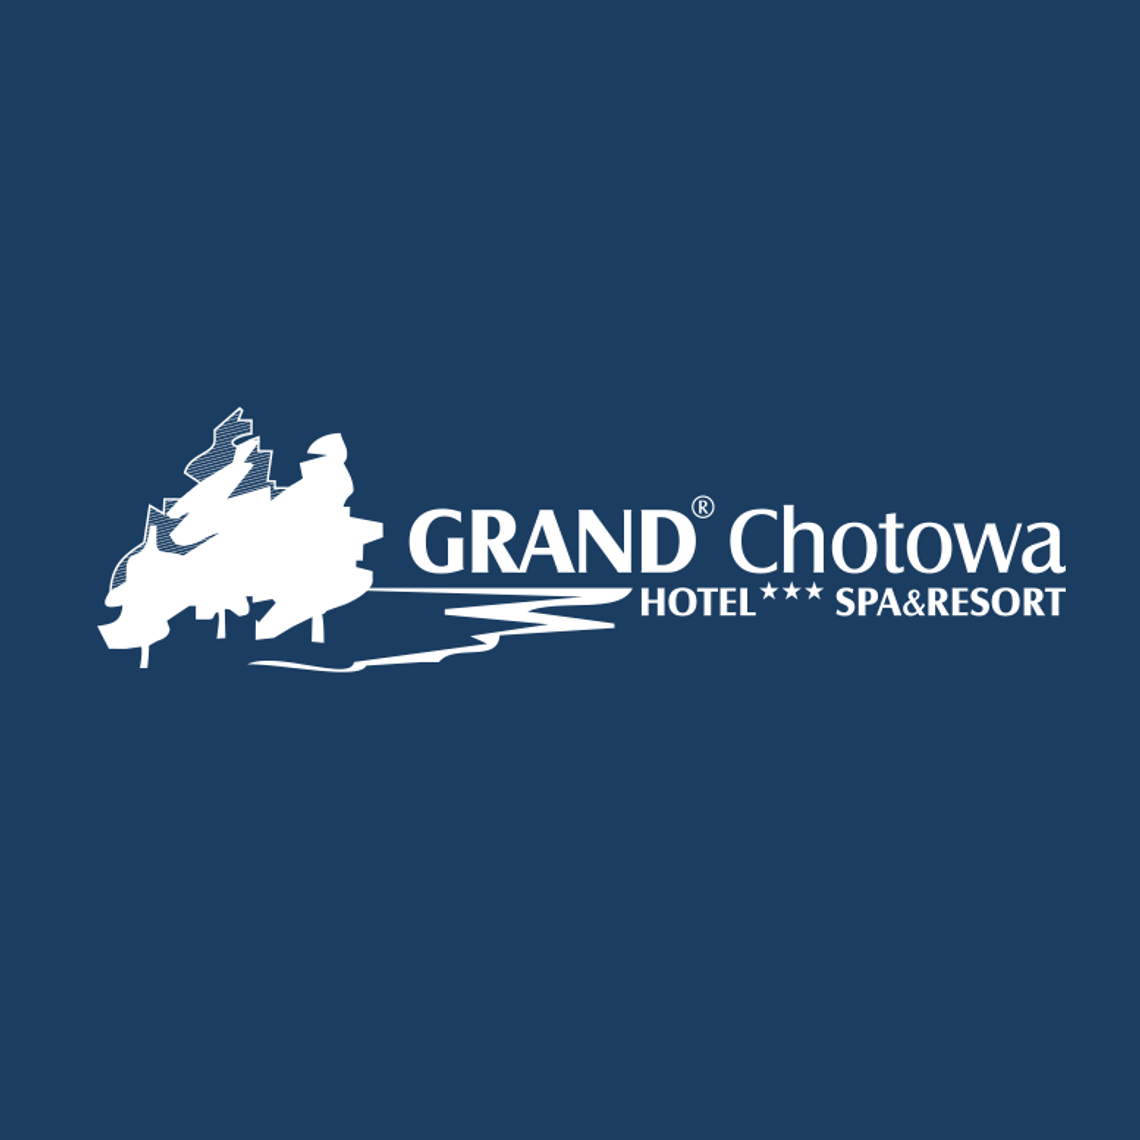 Grand Chotowa Hotel*** SPA & Resort